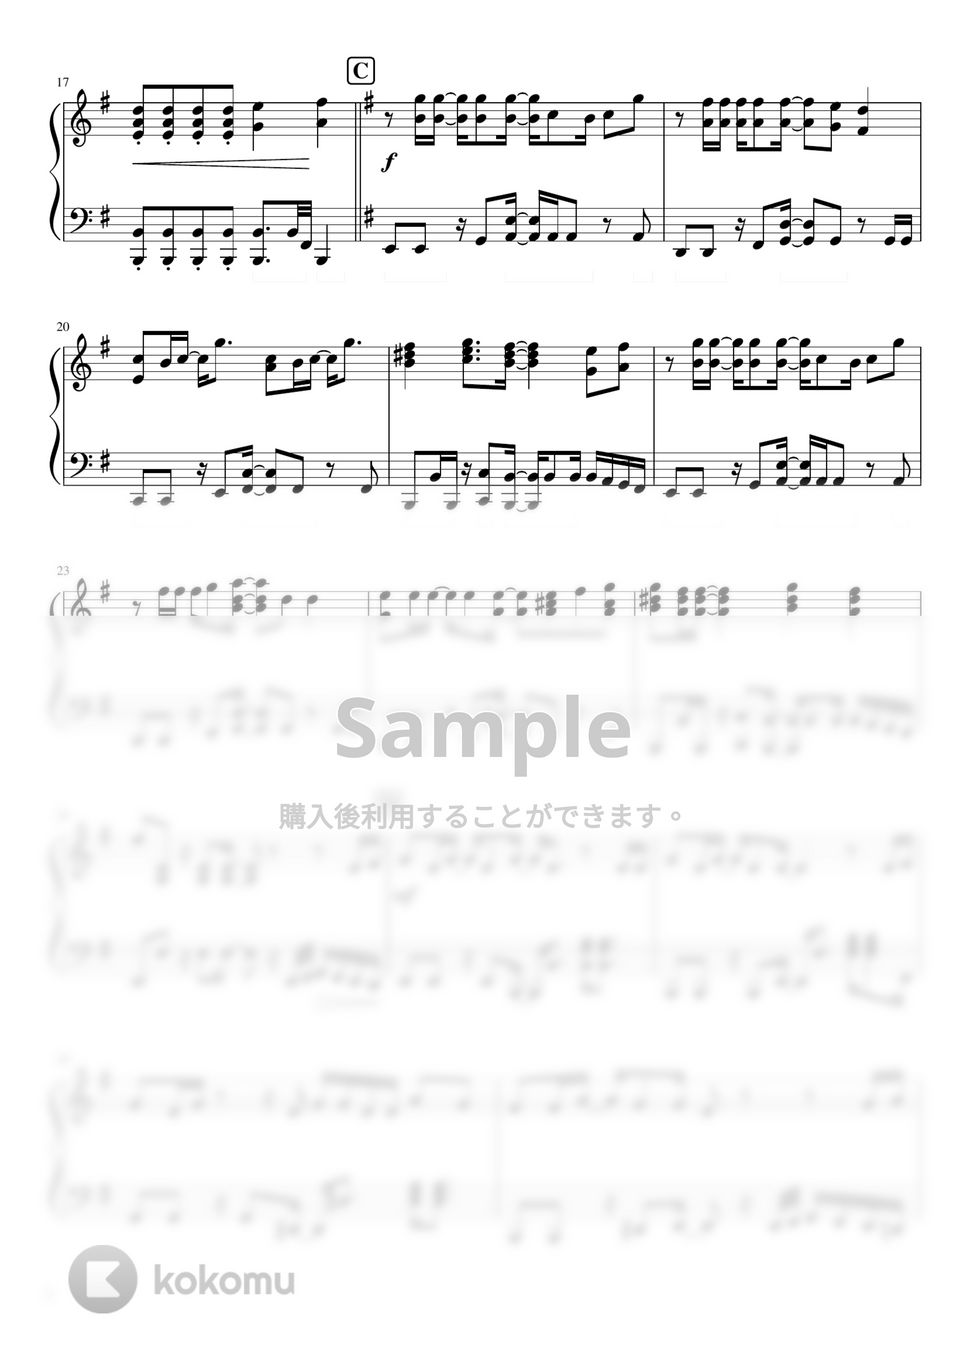 なにわ男子 - Dance in the Rain (なにわ男子 4th Single『Special Kiss』/通常盤カップリング曲) by ピアノぷりん